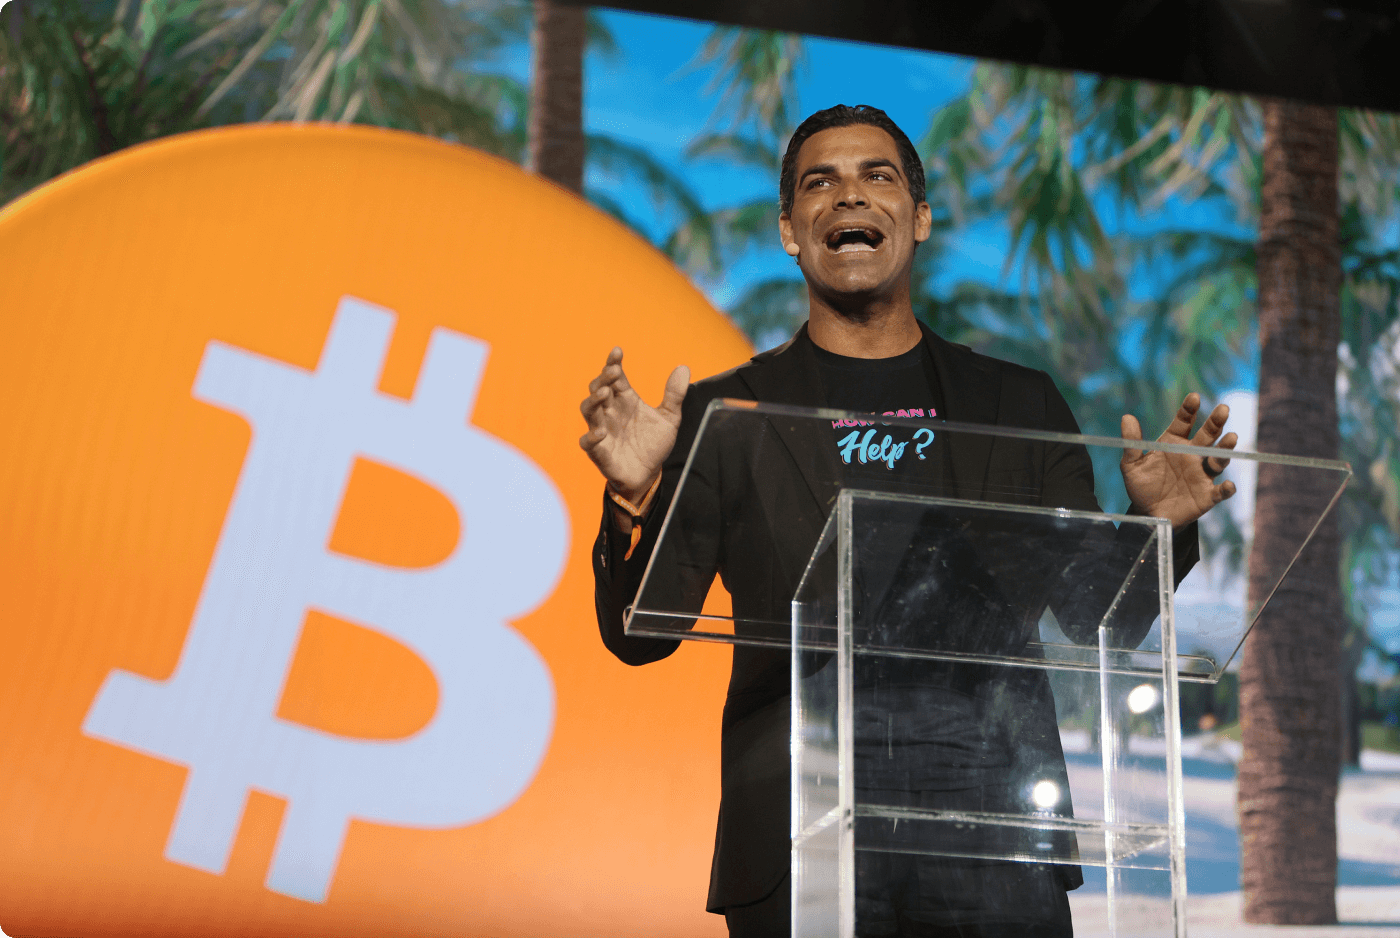 Miami Mayor Francisco Suarez speech on Bitcoin